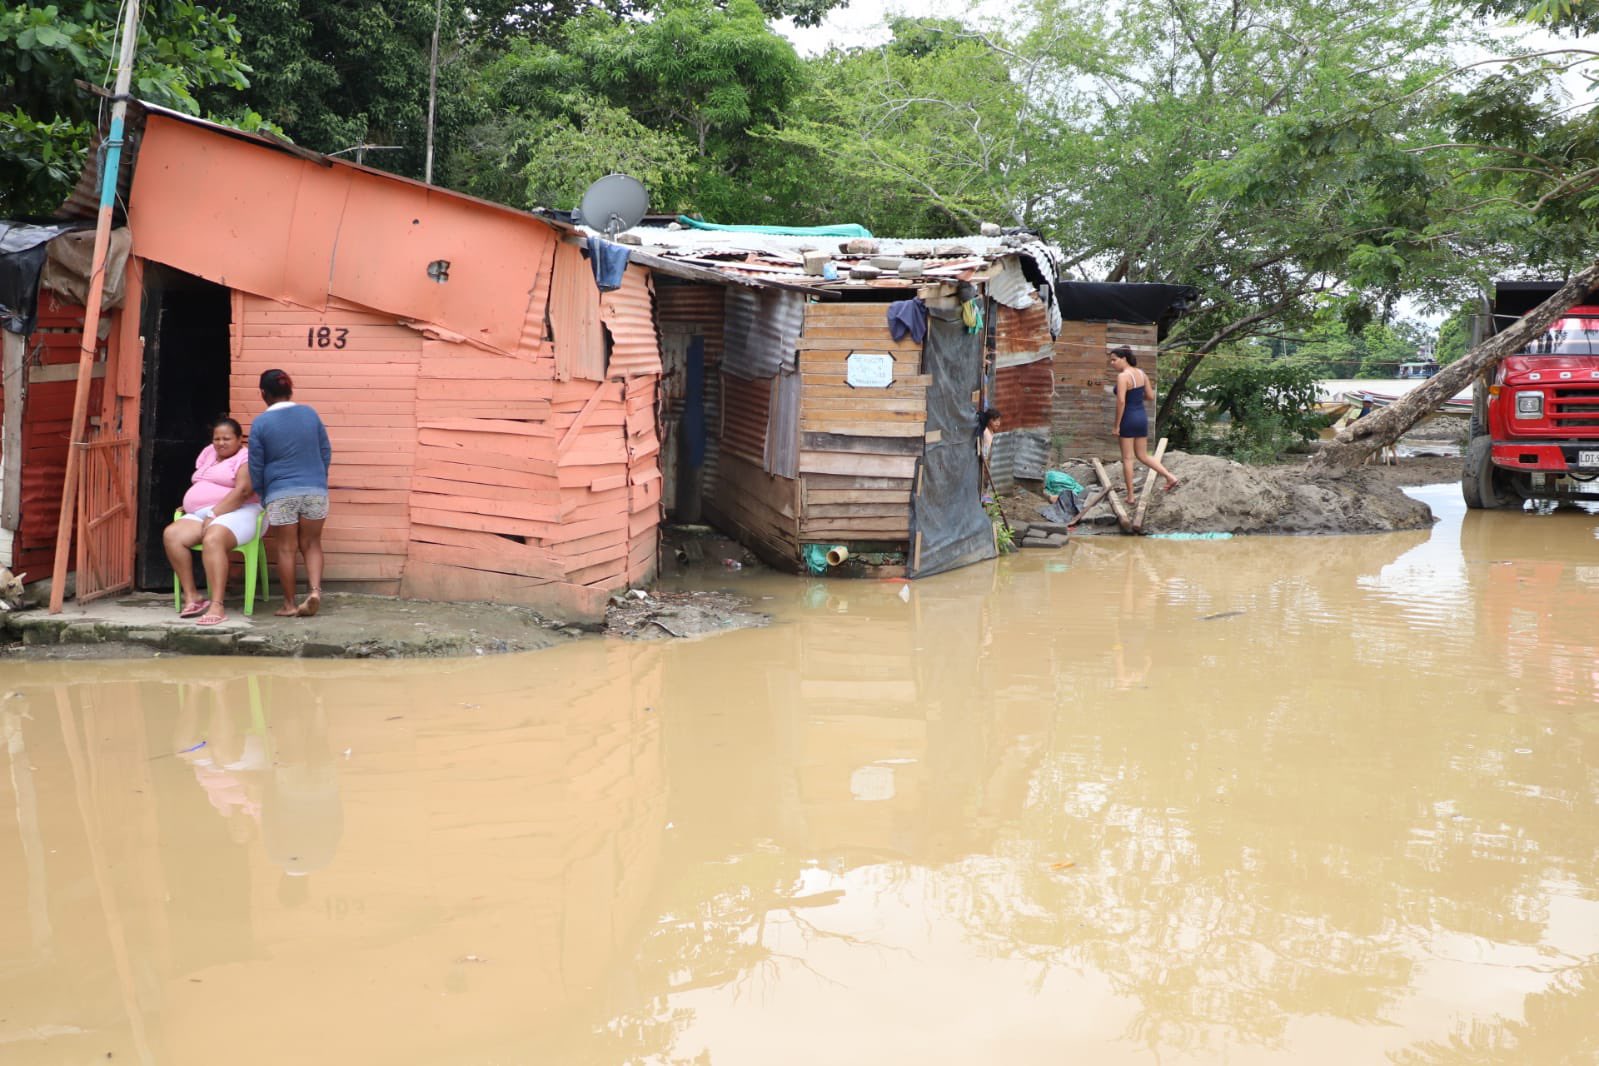 Brindan atención humanitaria a familias de Zarabanda afectadas por desbordamiento del río Sinú en Montería